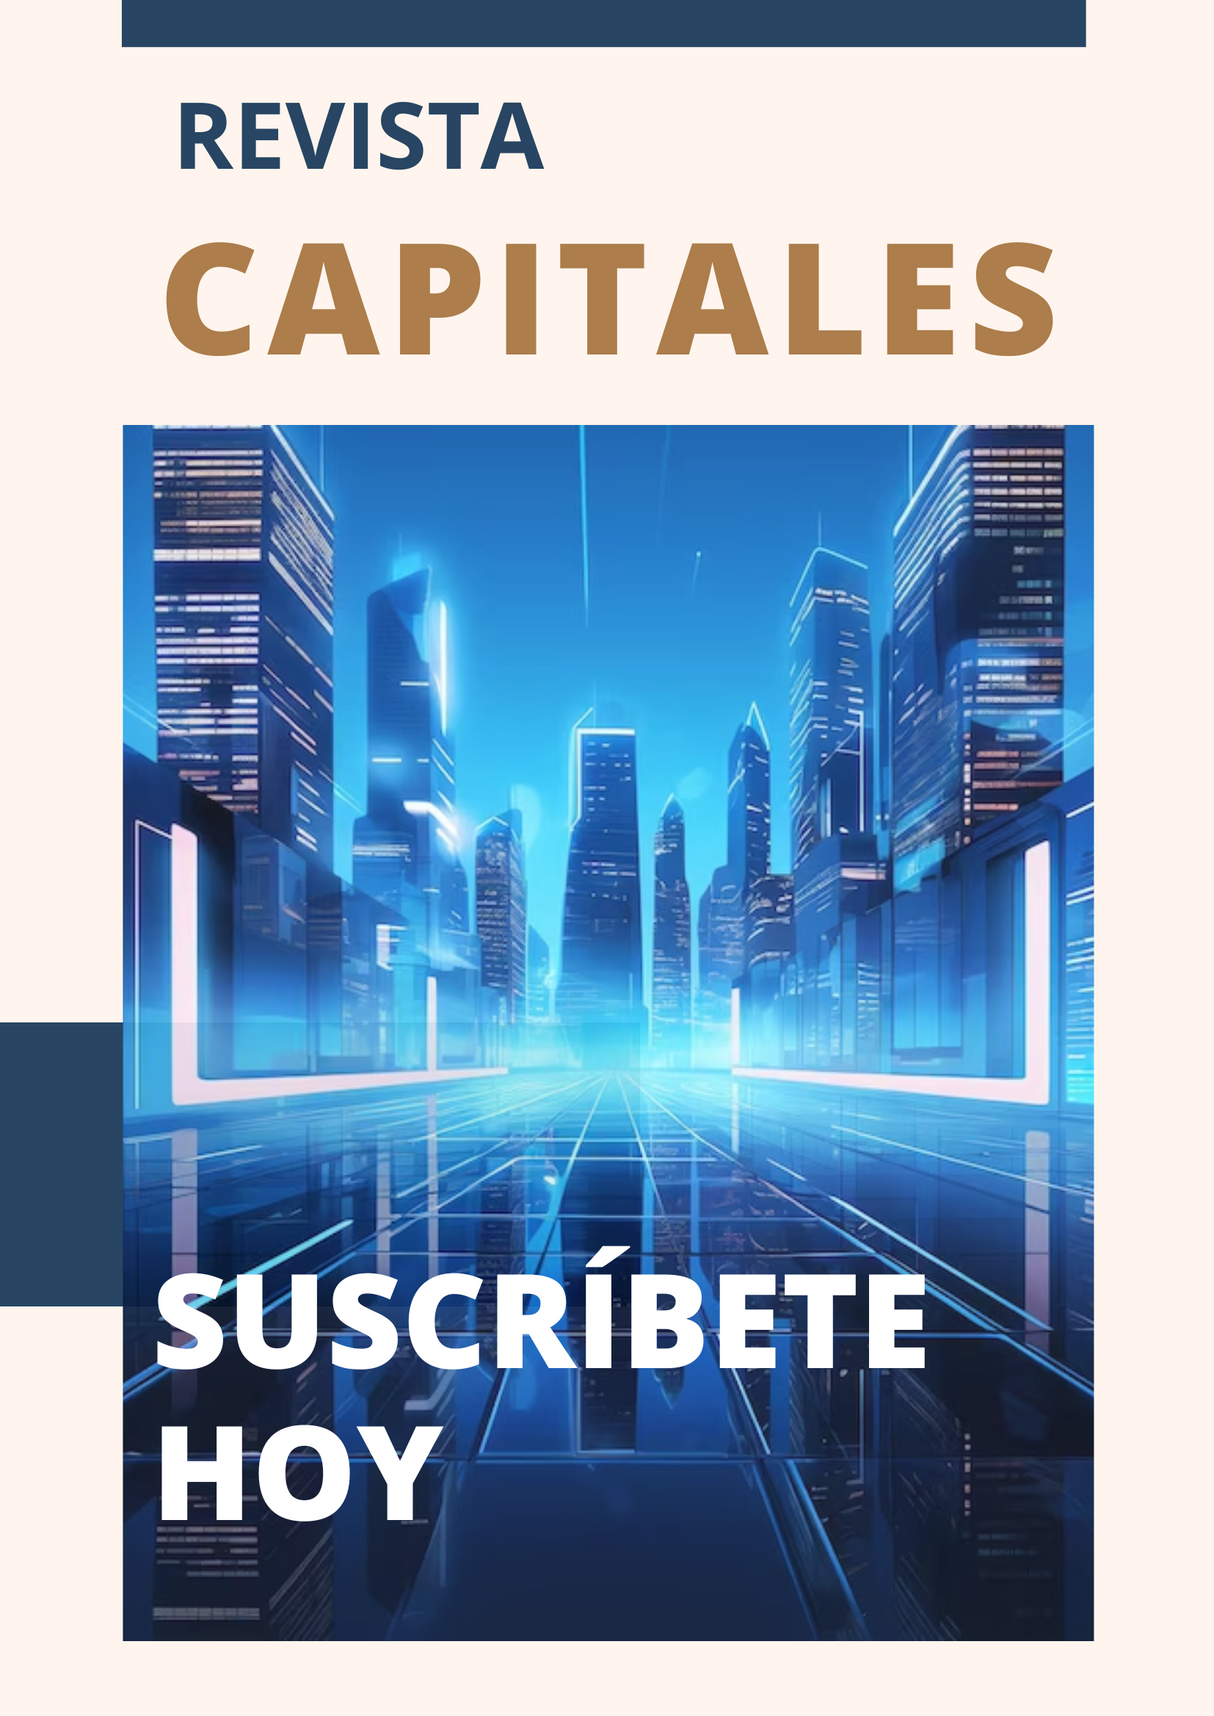 Revista Capitales